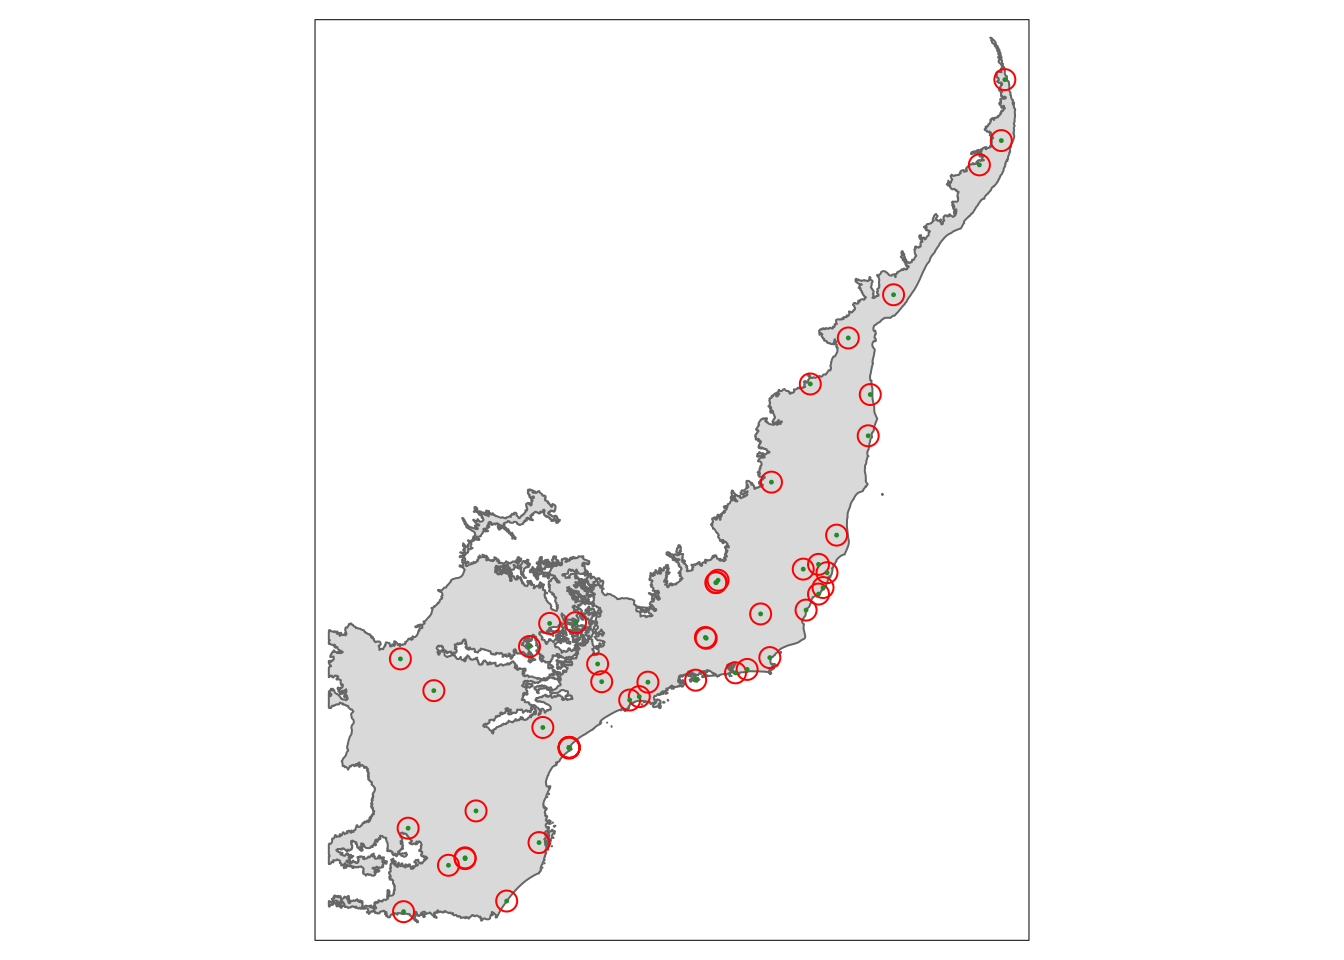 Distribuição de 50 localidades aleatórios e buffers de ~1 km (fora de escala).